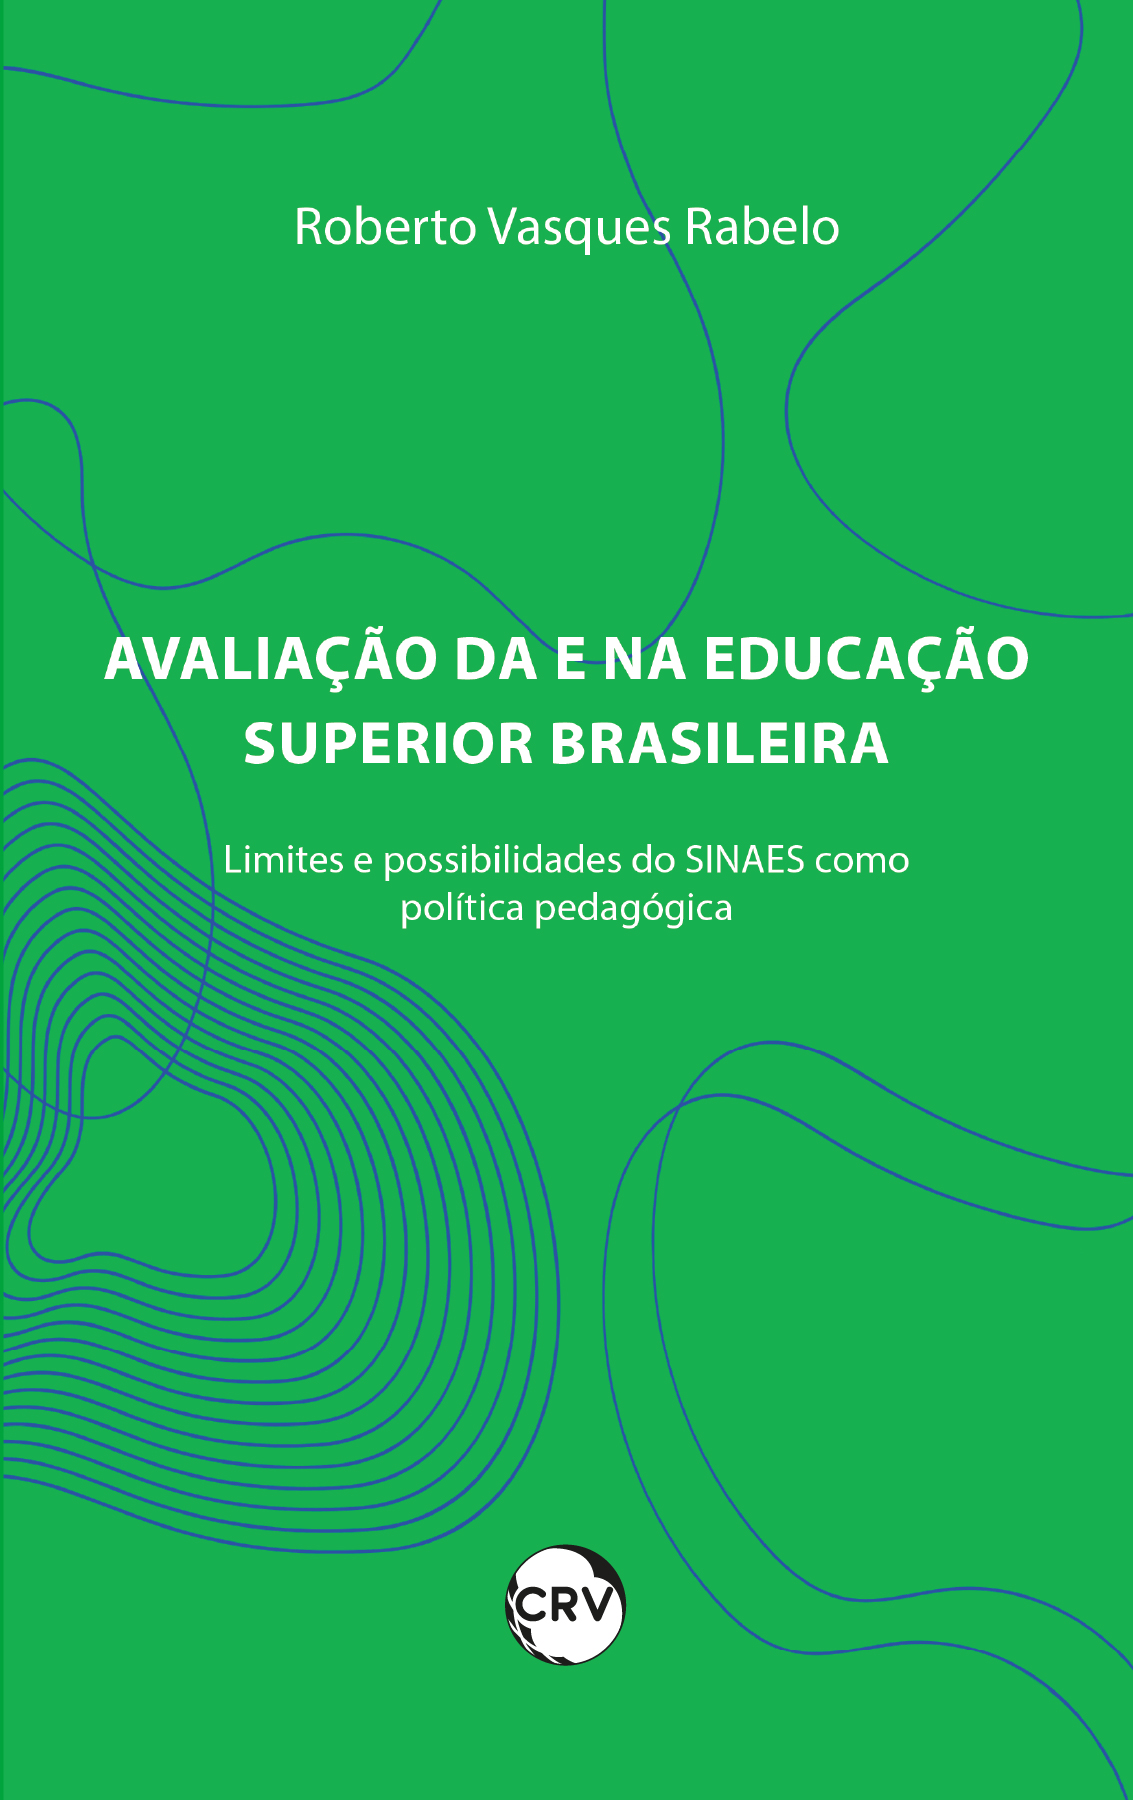 Capa do livro: AVALIAÇÃO DA E NA EDUCAÇÃO SUPERIOR BRASILEIRA: <br>Limites e possibilidades do SINAES como política pública pedagógica